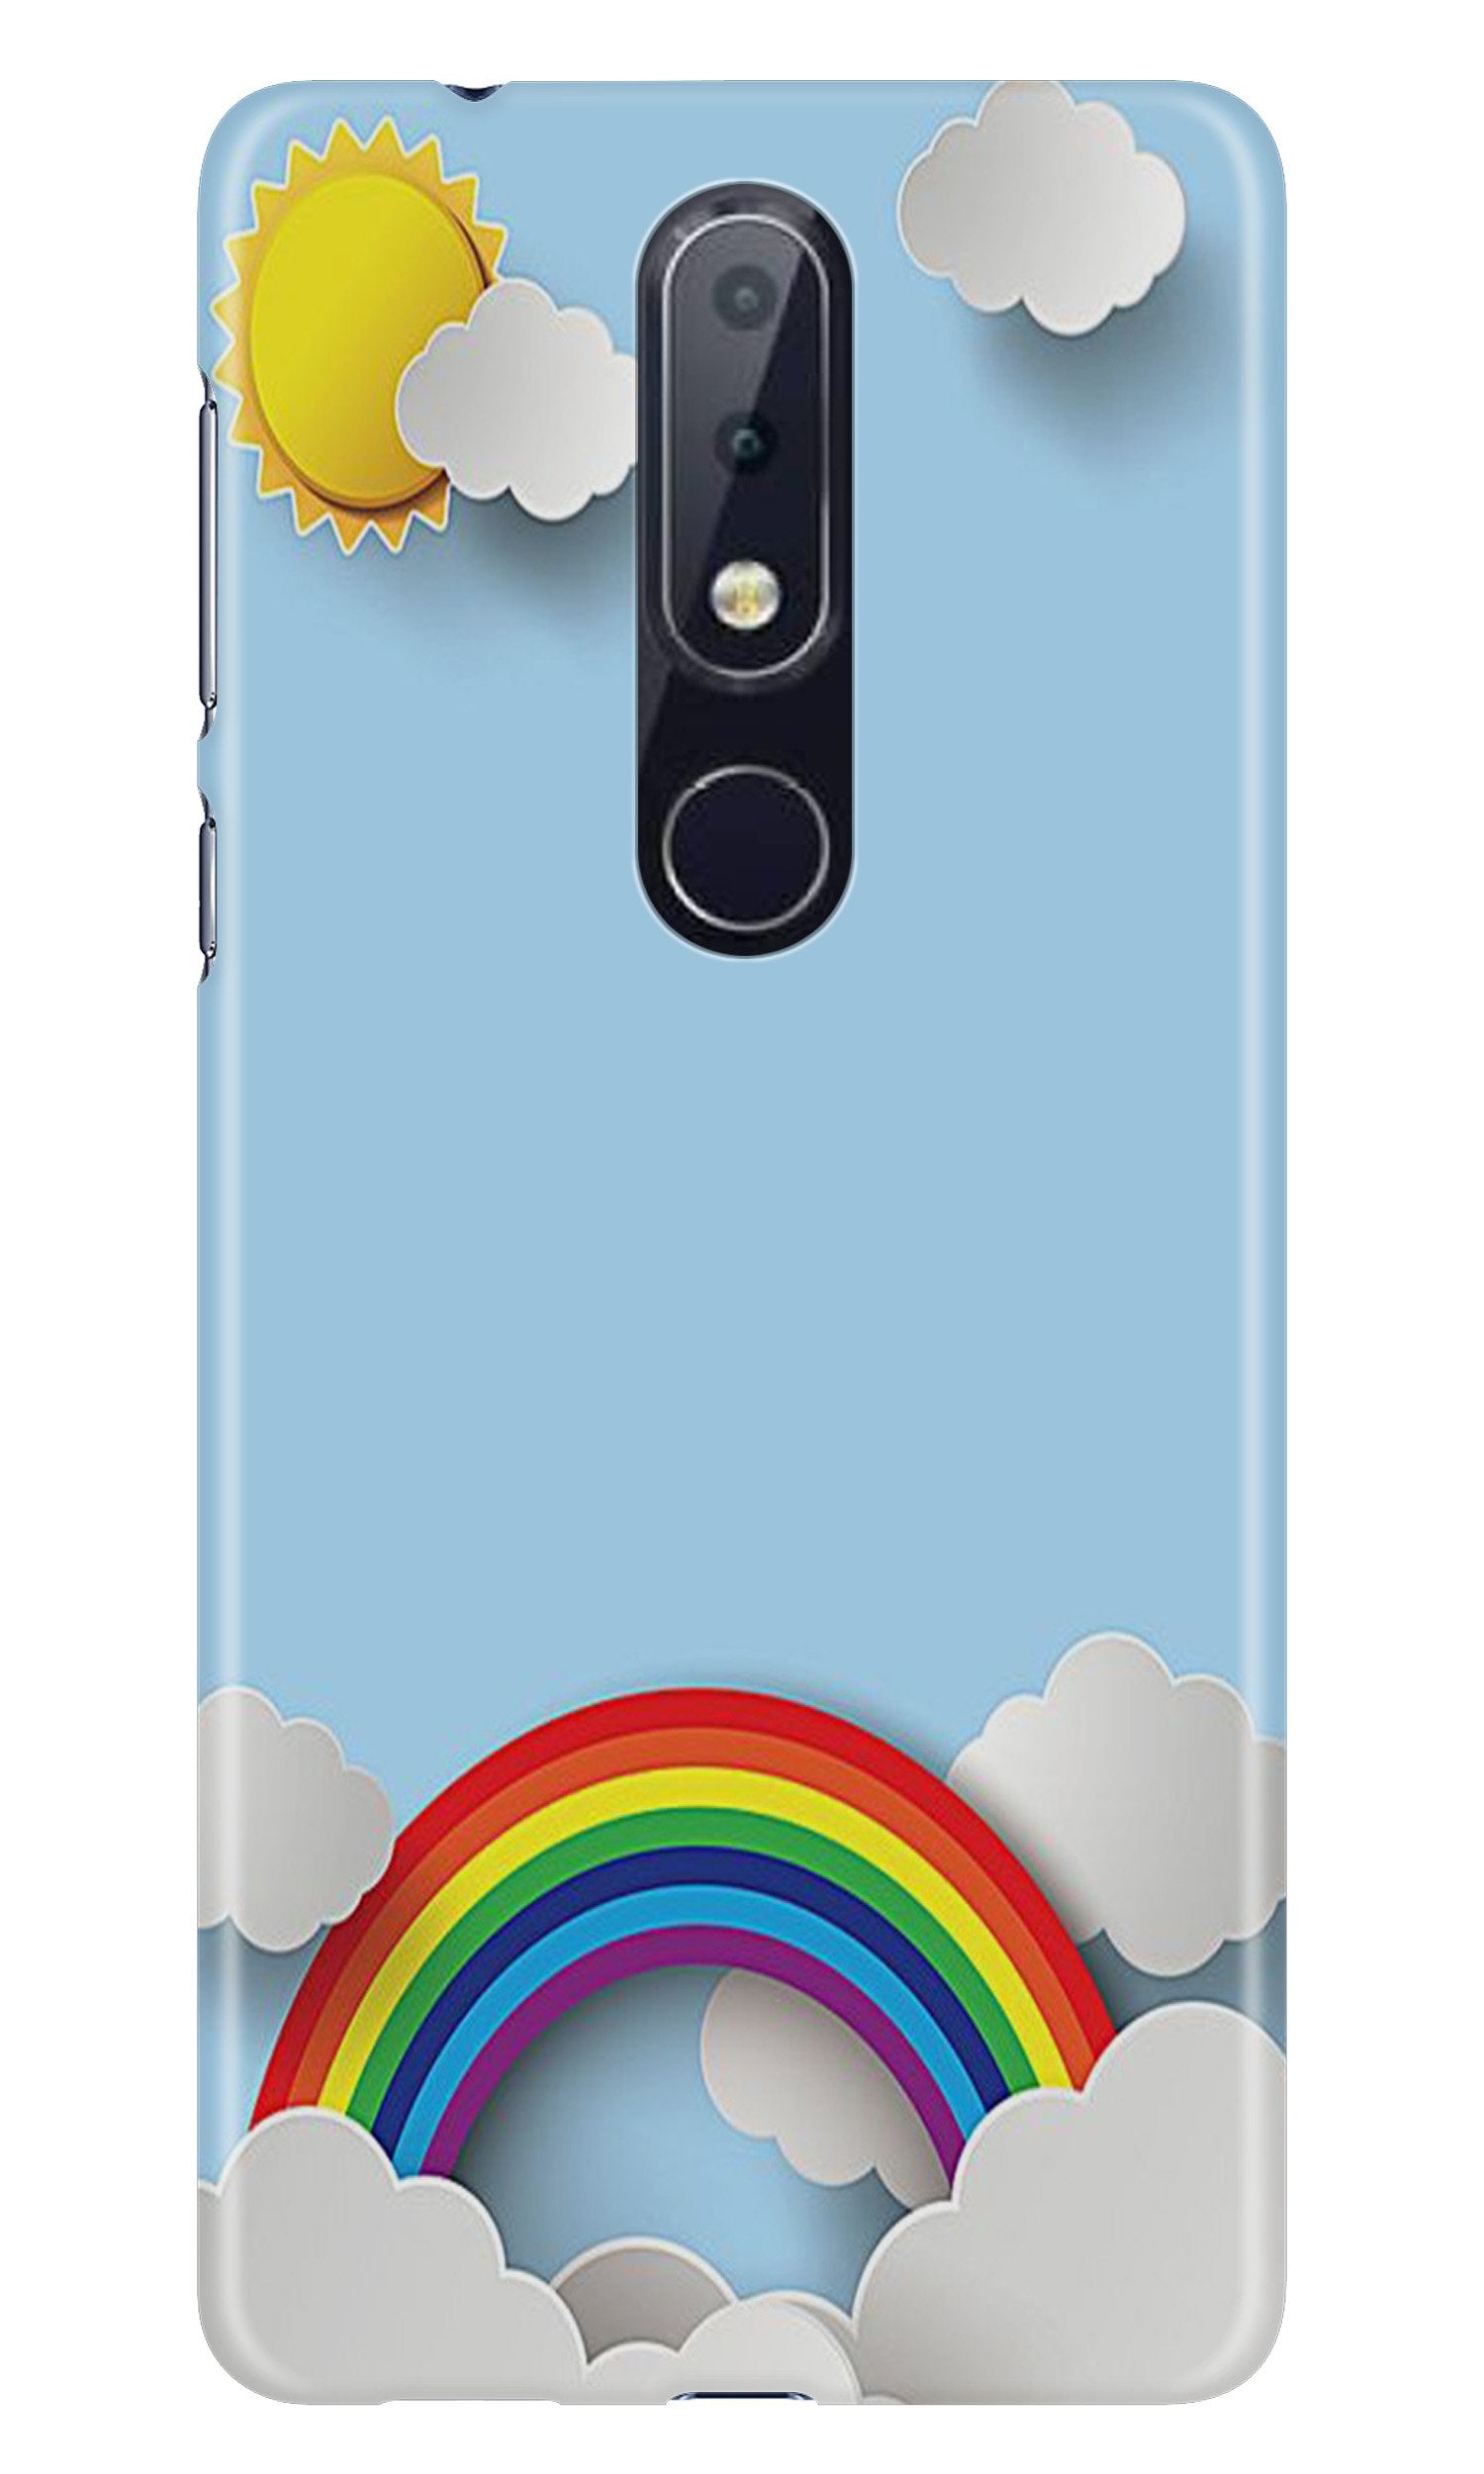 Rainbow Case for Nokia 6.1 Plus (Design No. 225)